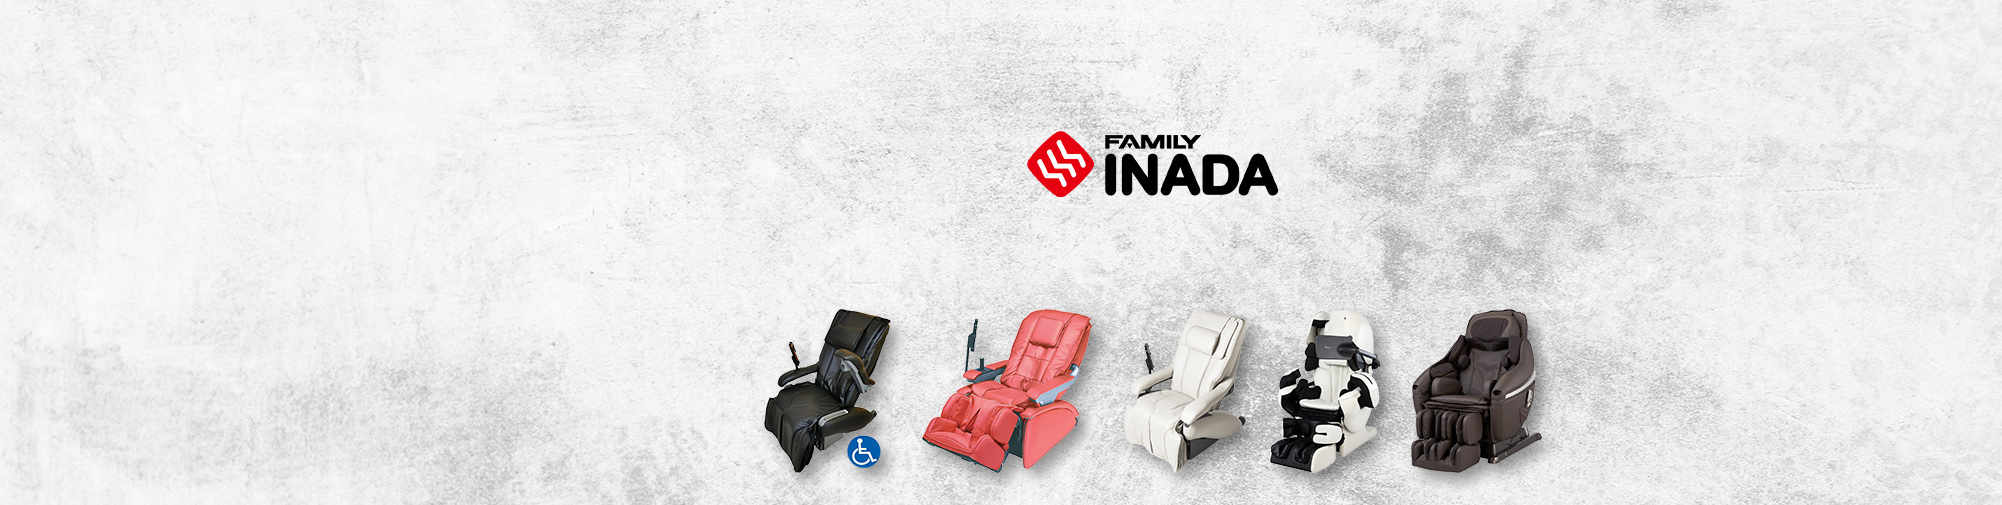 Family Inada - традиційна японська компанія | Світ масажних крісел